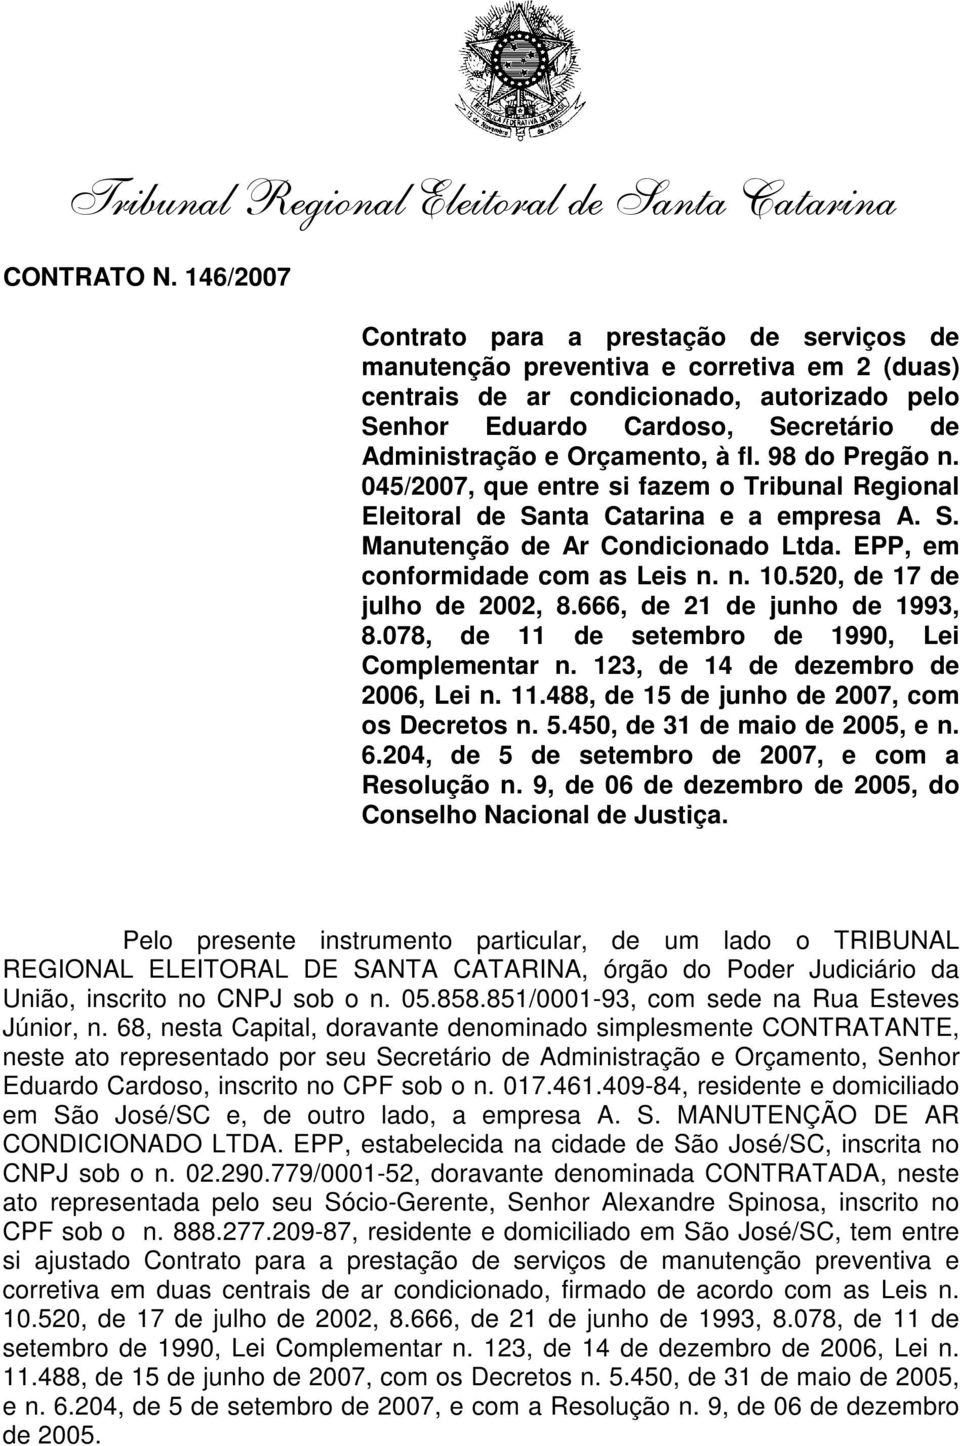 Orçamento, à fl. 98 do Pregão n. 045/2007, que entre si fazem o Tribunal Regional Eleitoral de Santa Catarina e a empresa A. S. Manutenção de Ar Condicionado Ltda. EPP, em conformidade com as Leis n.